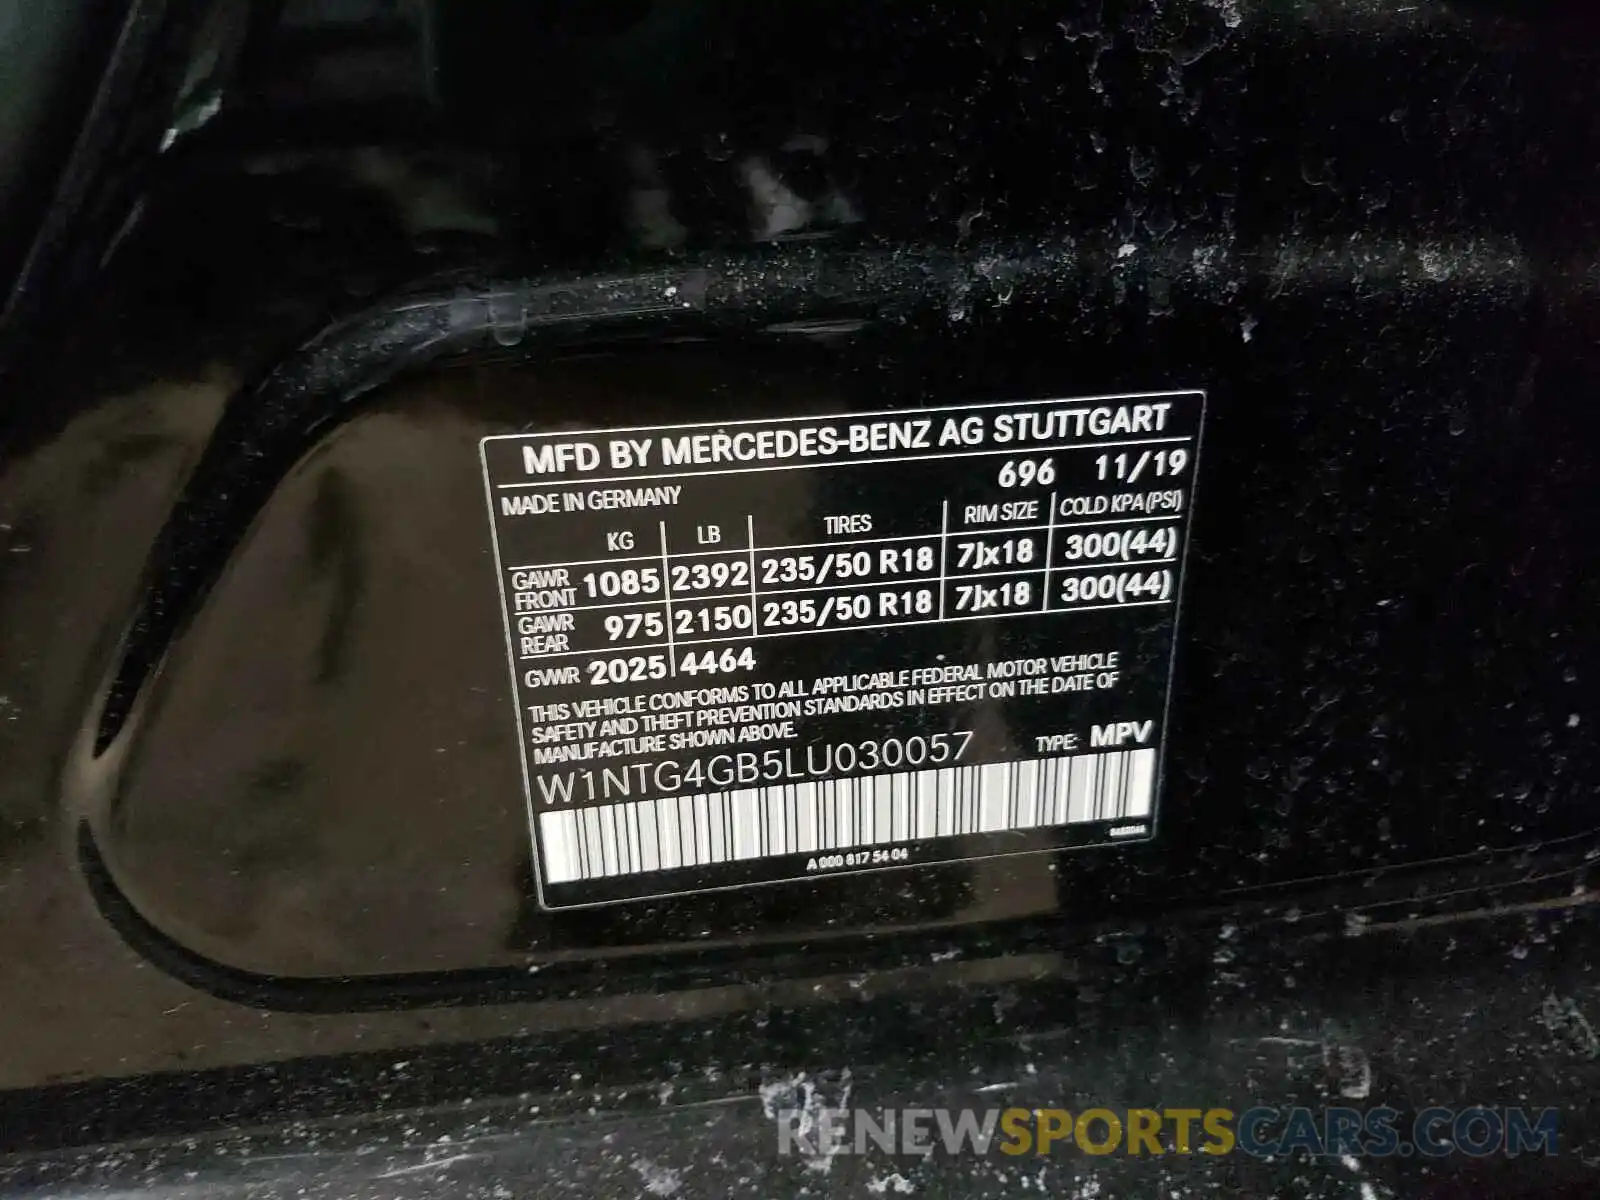 10 Photograph of a damaged car W1NTG4GB5LU030057 MERCEDES-BENZ G CLASS 2020